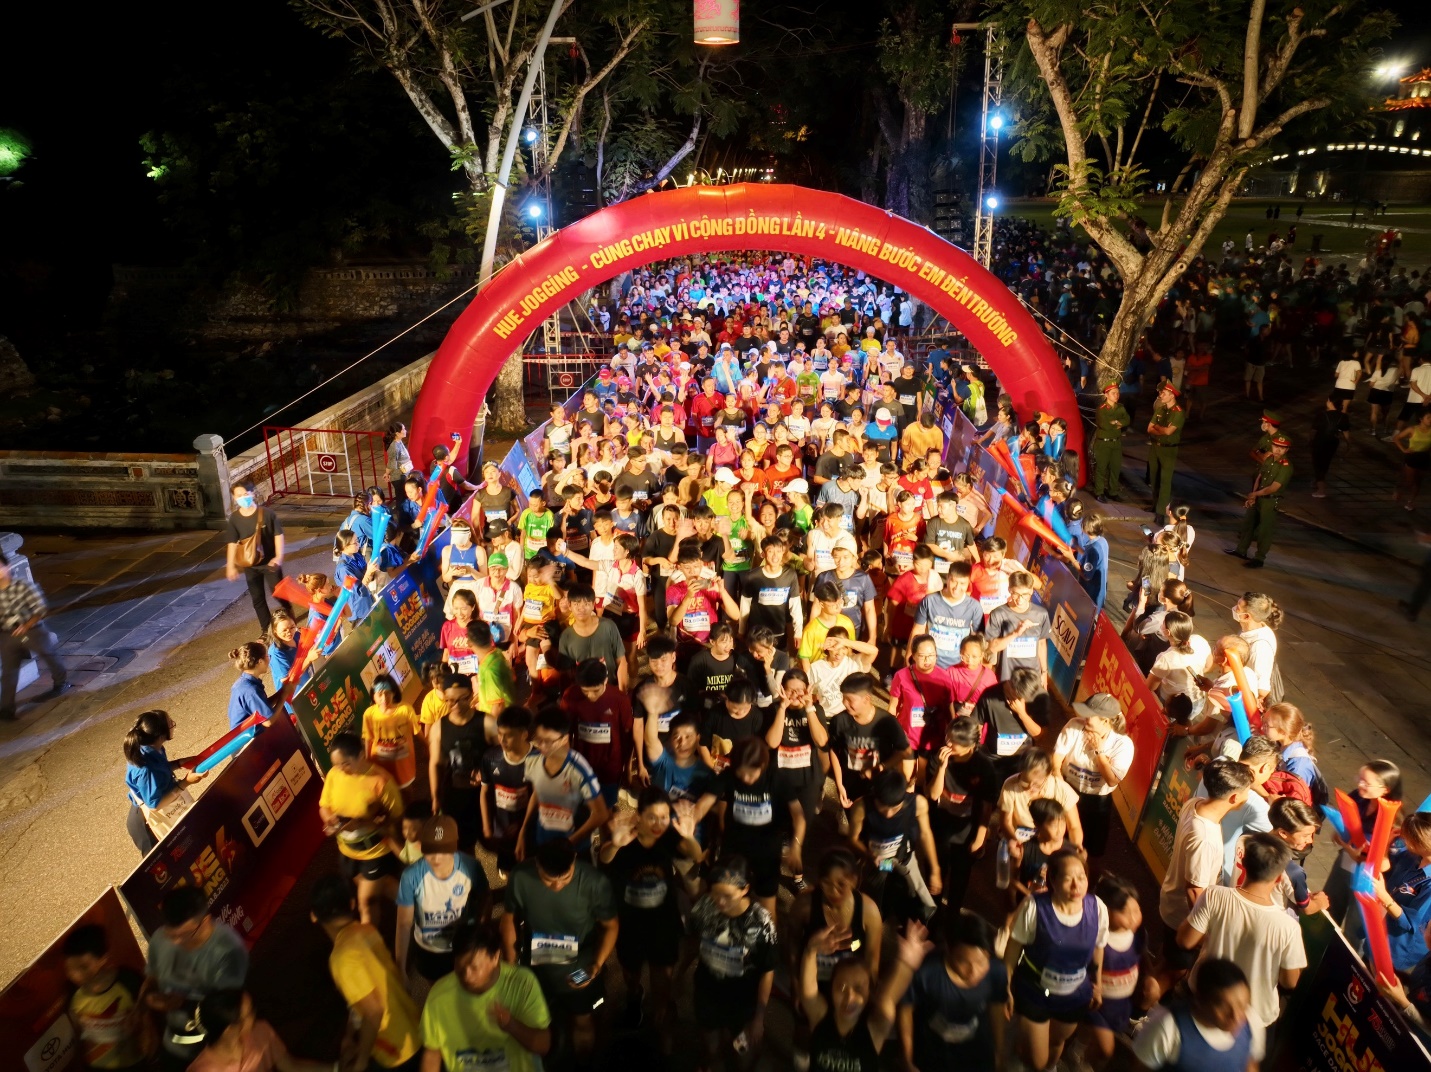 Hơn vạn người tham gia giải chạy ‘Hue jogging - cùng chạy vì cộng đồng’ - 9